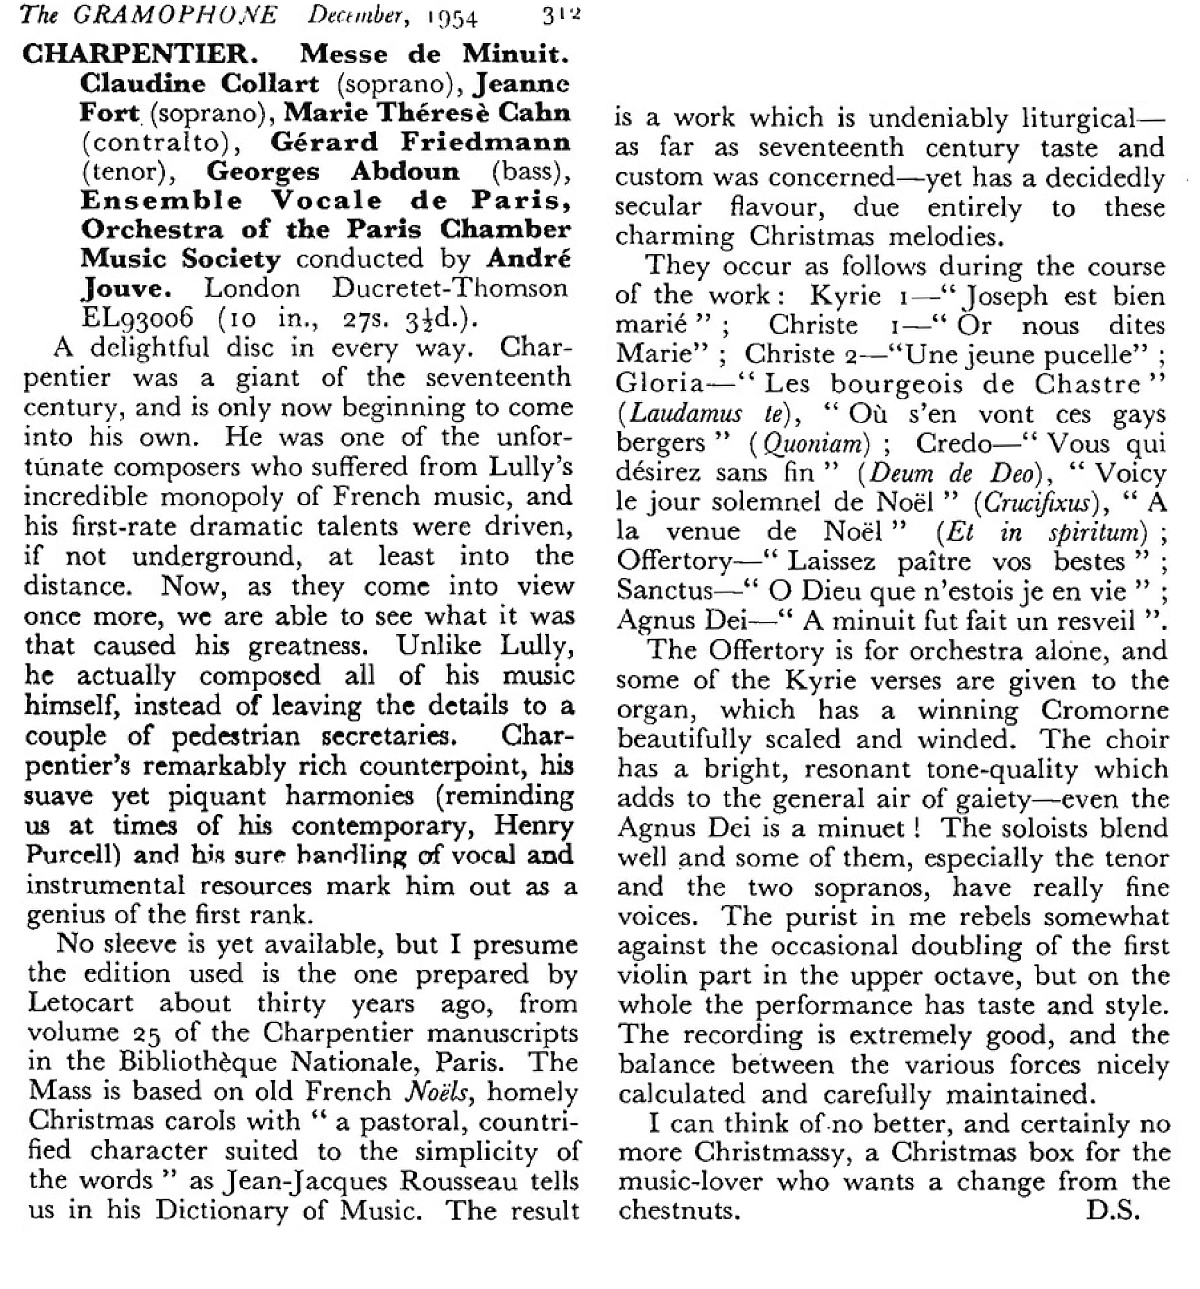 Compte-rendu publié dans la revue «The Gramophone» de décembre 1954, en page 312